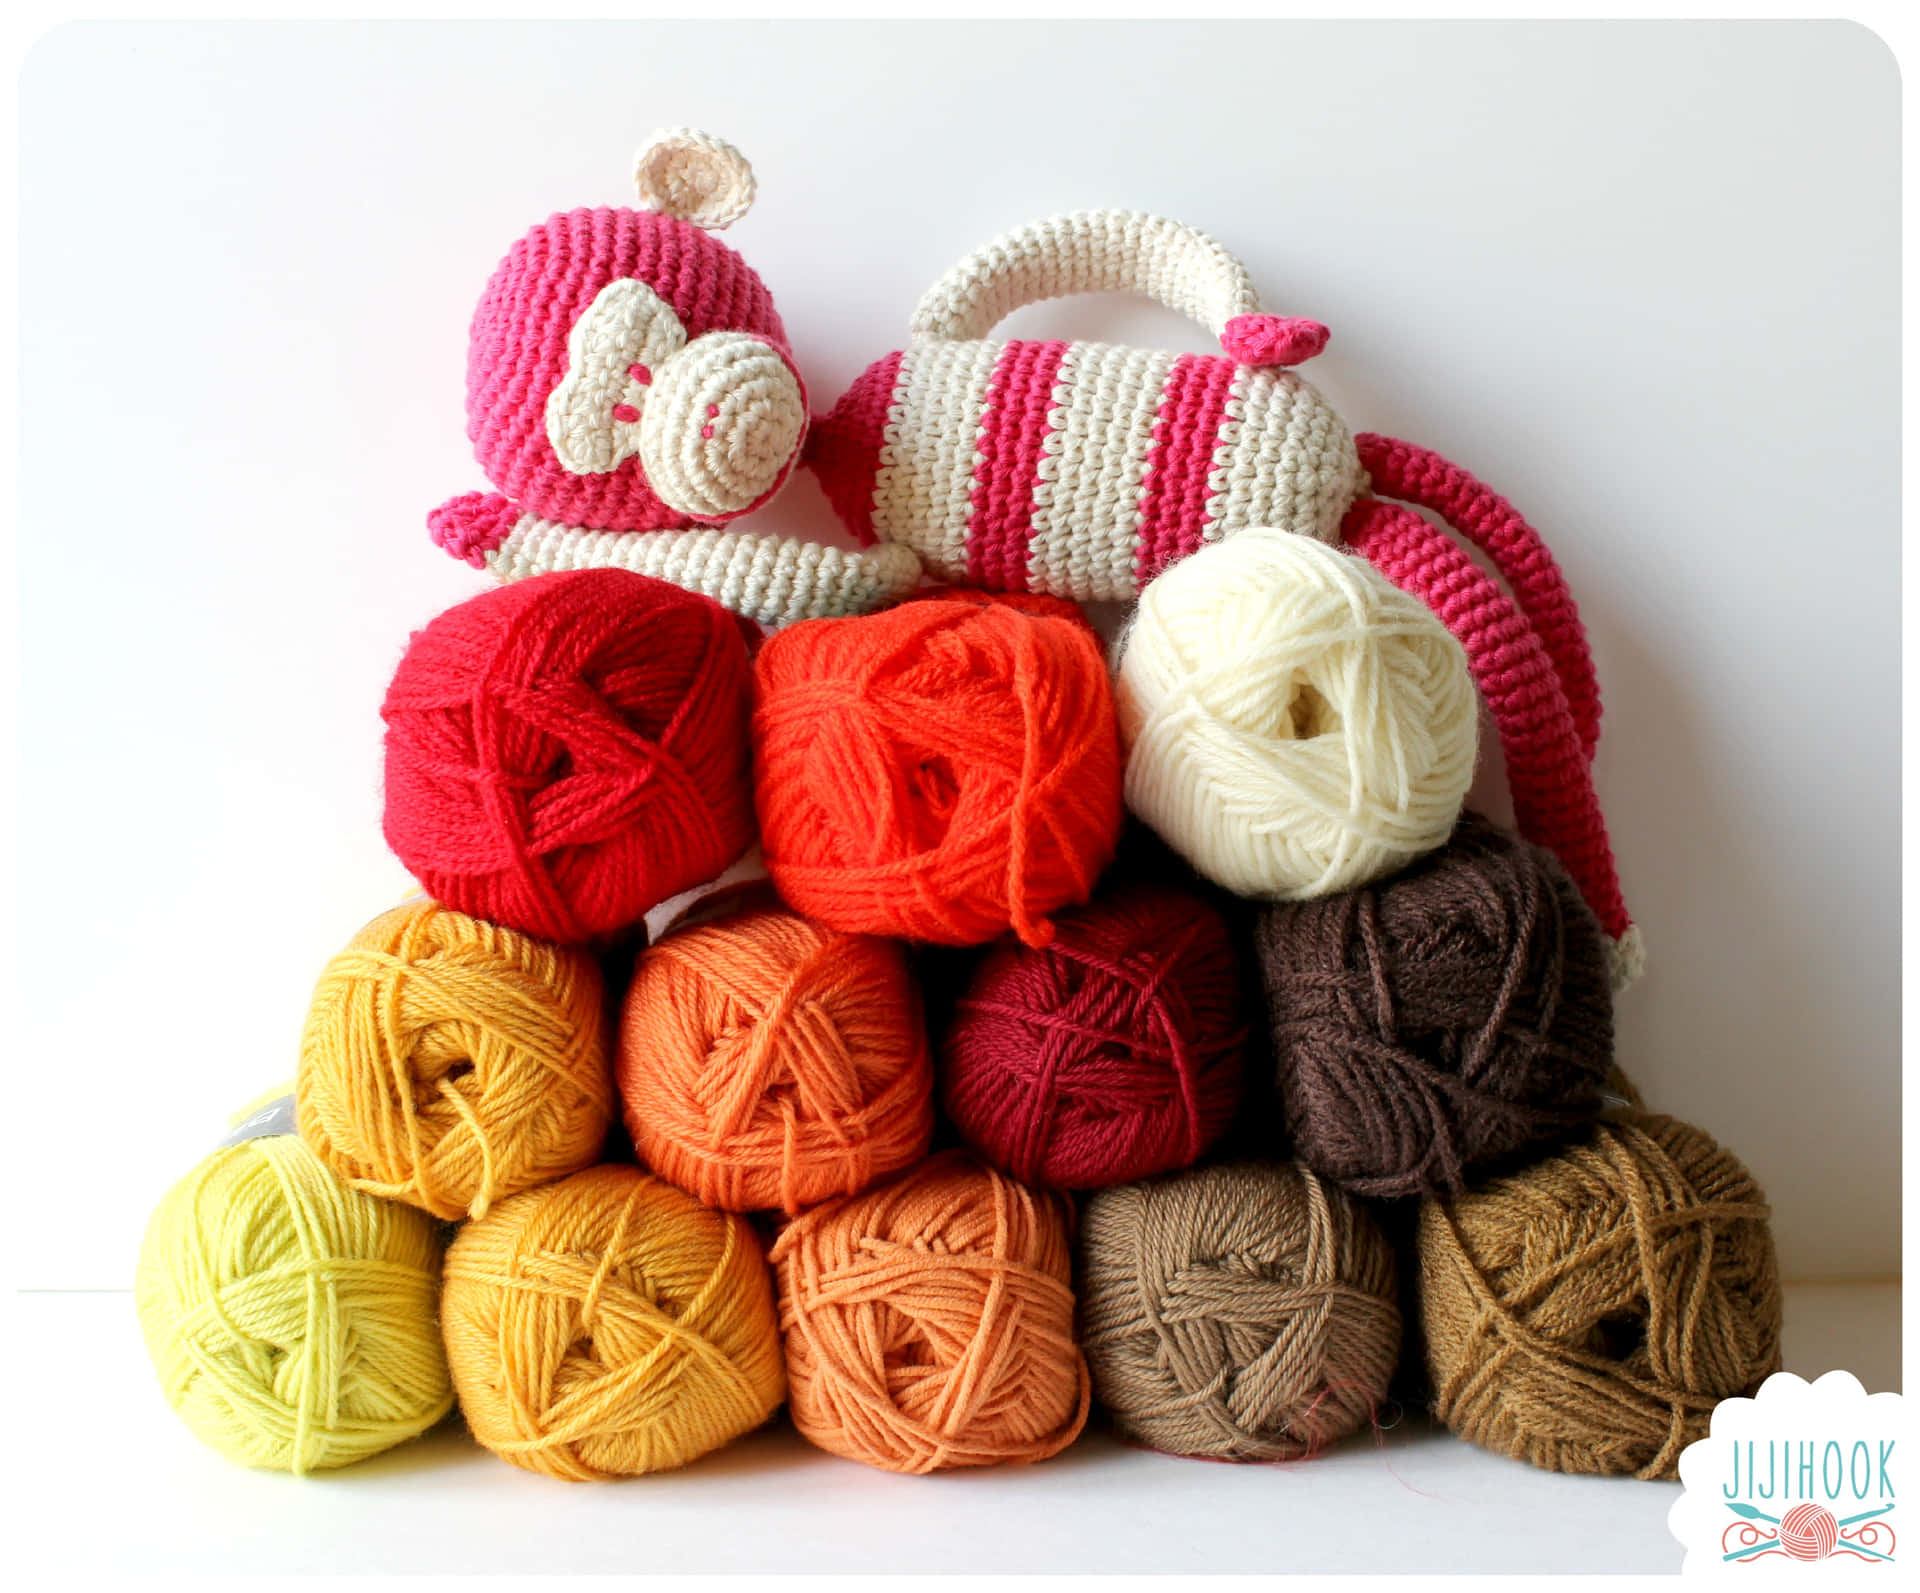 Imagende Un Mono Rosa Tejido A Crochet